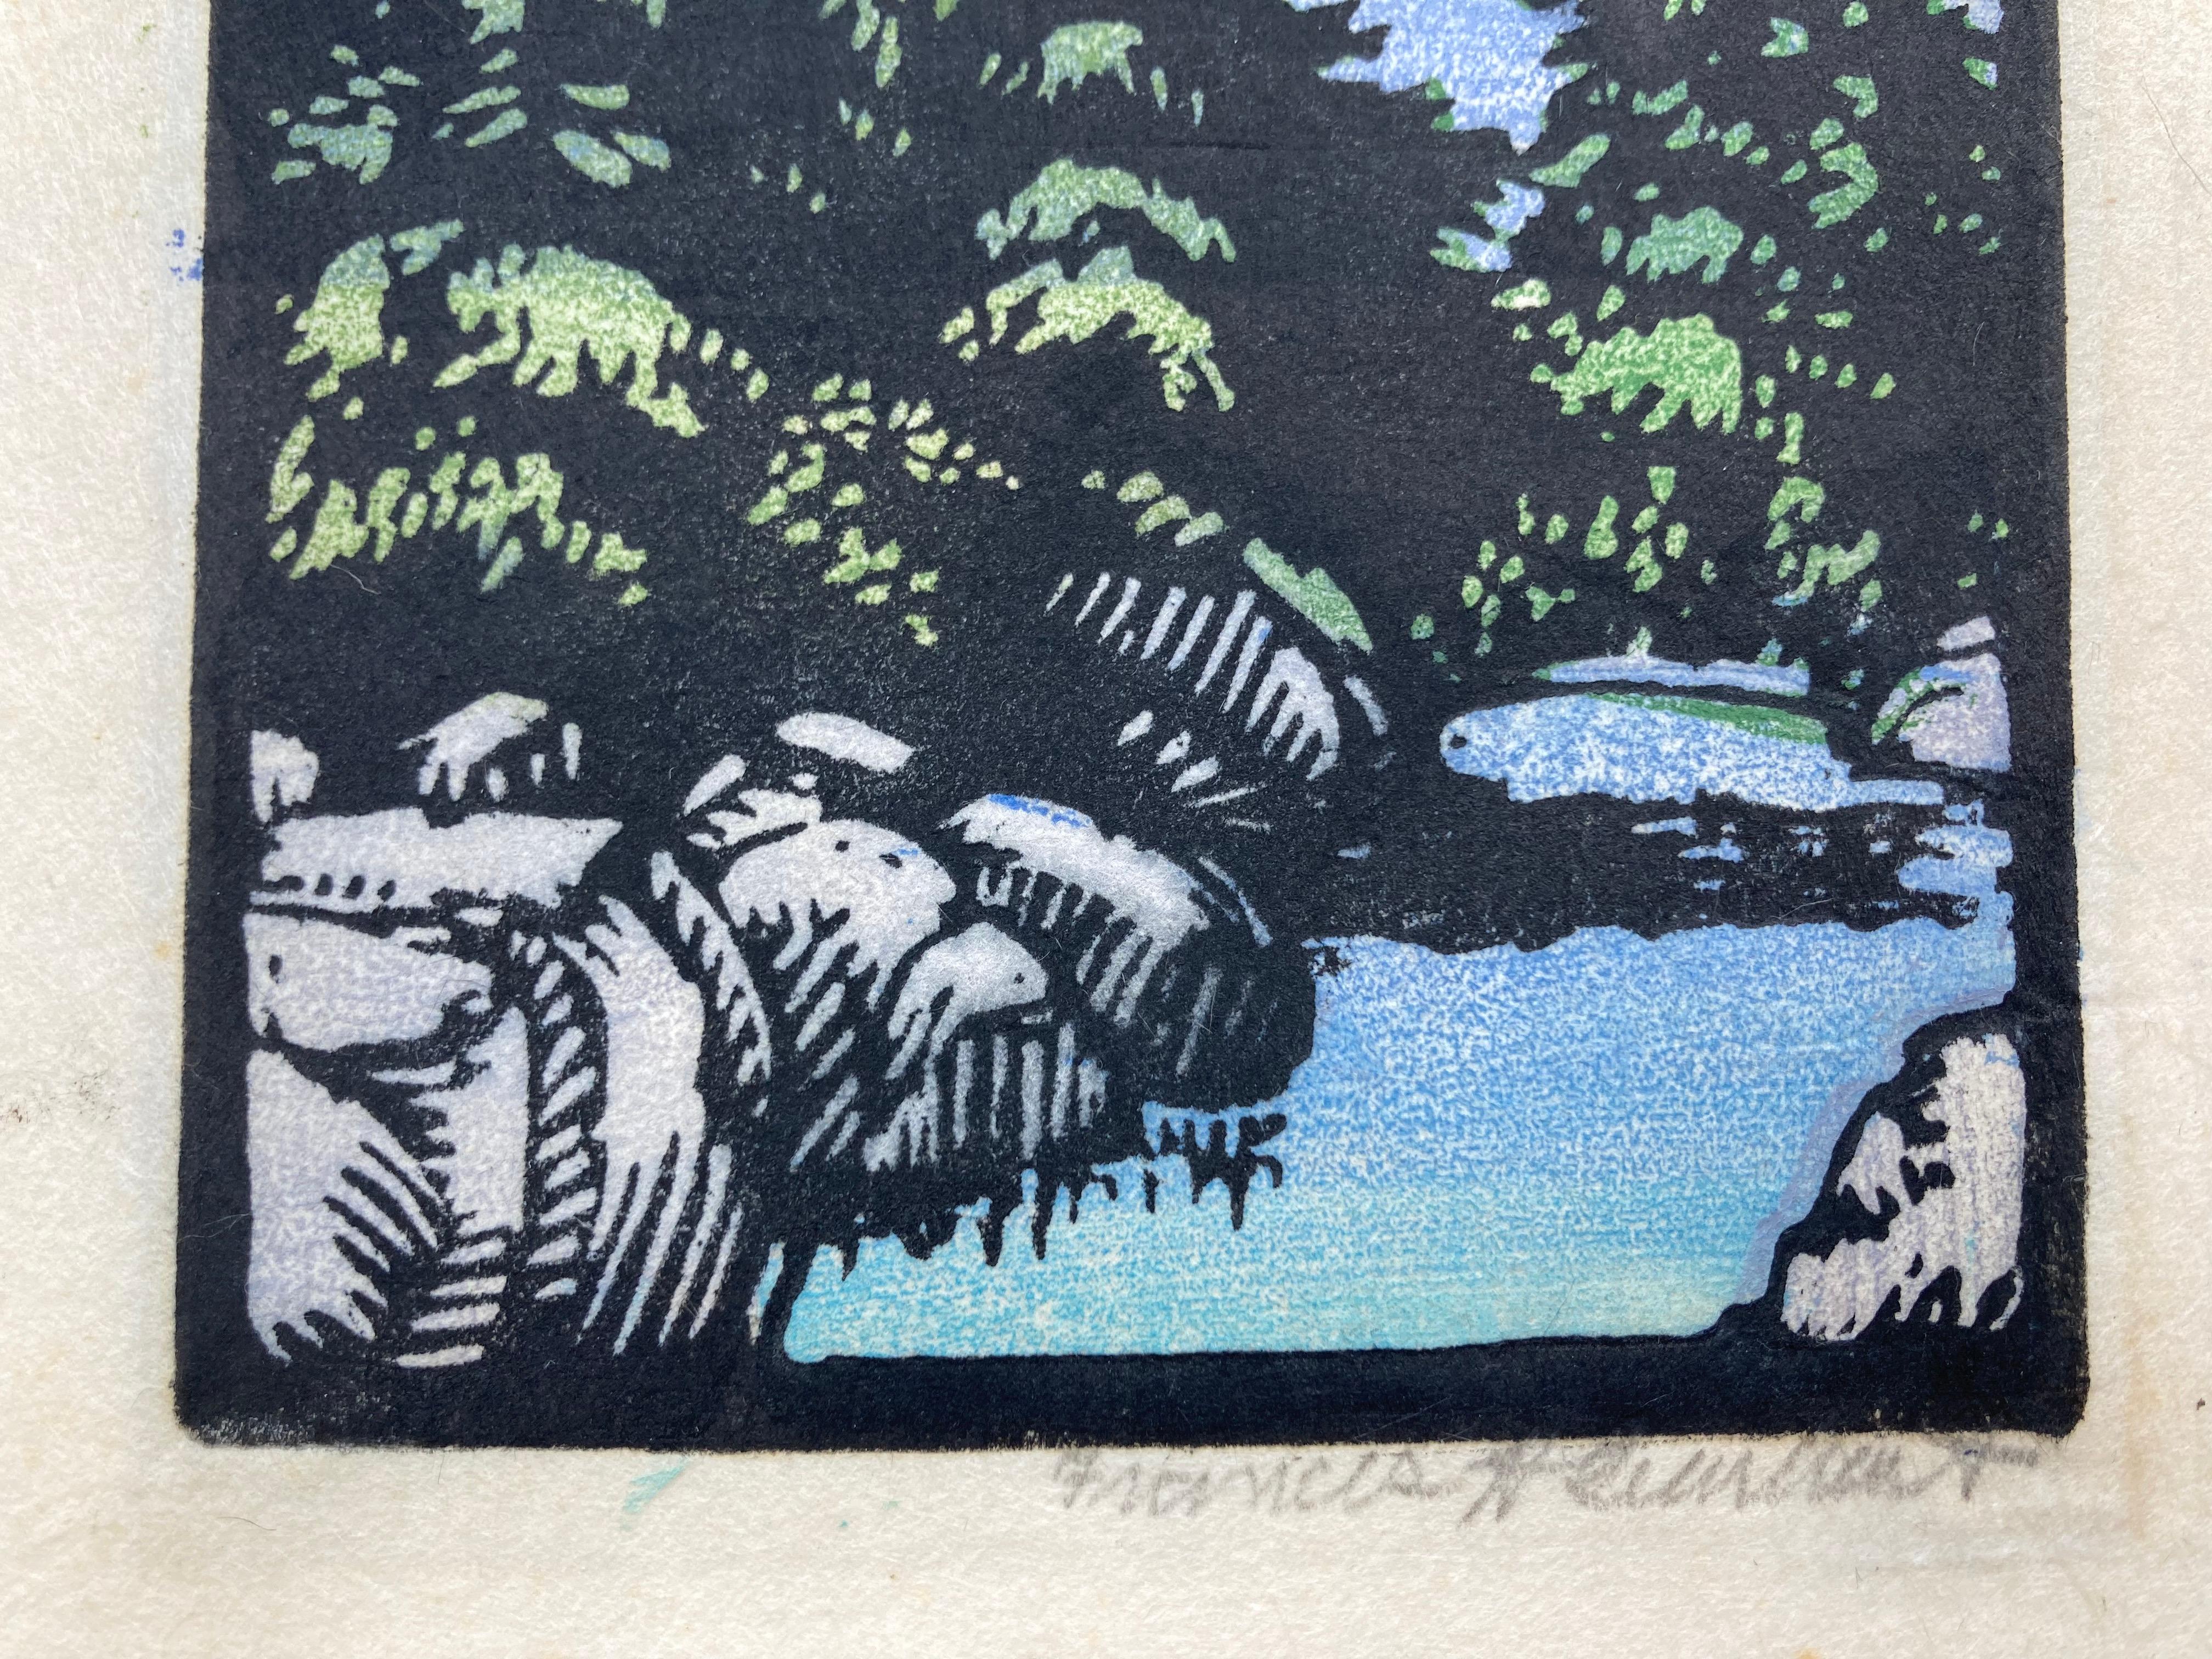 
FRANCES H. GEARHART (1869-1958)

(Mt.) SAN JACINTO um 1926 
Farbiger Blockdruck. Mit Bleistift signiert. Unbekannte Ausgabe, aber ungewöhnlich. Bild 6 5/8 x 4 1/8 Zoll. Auf dem typischen faserigen Japanpapier von Gearhart. Blatt 10 ½ x 5 7/8 Zoll.